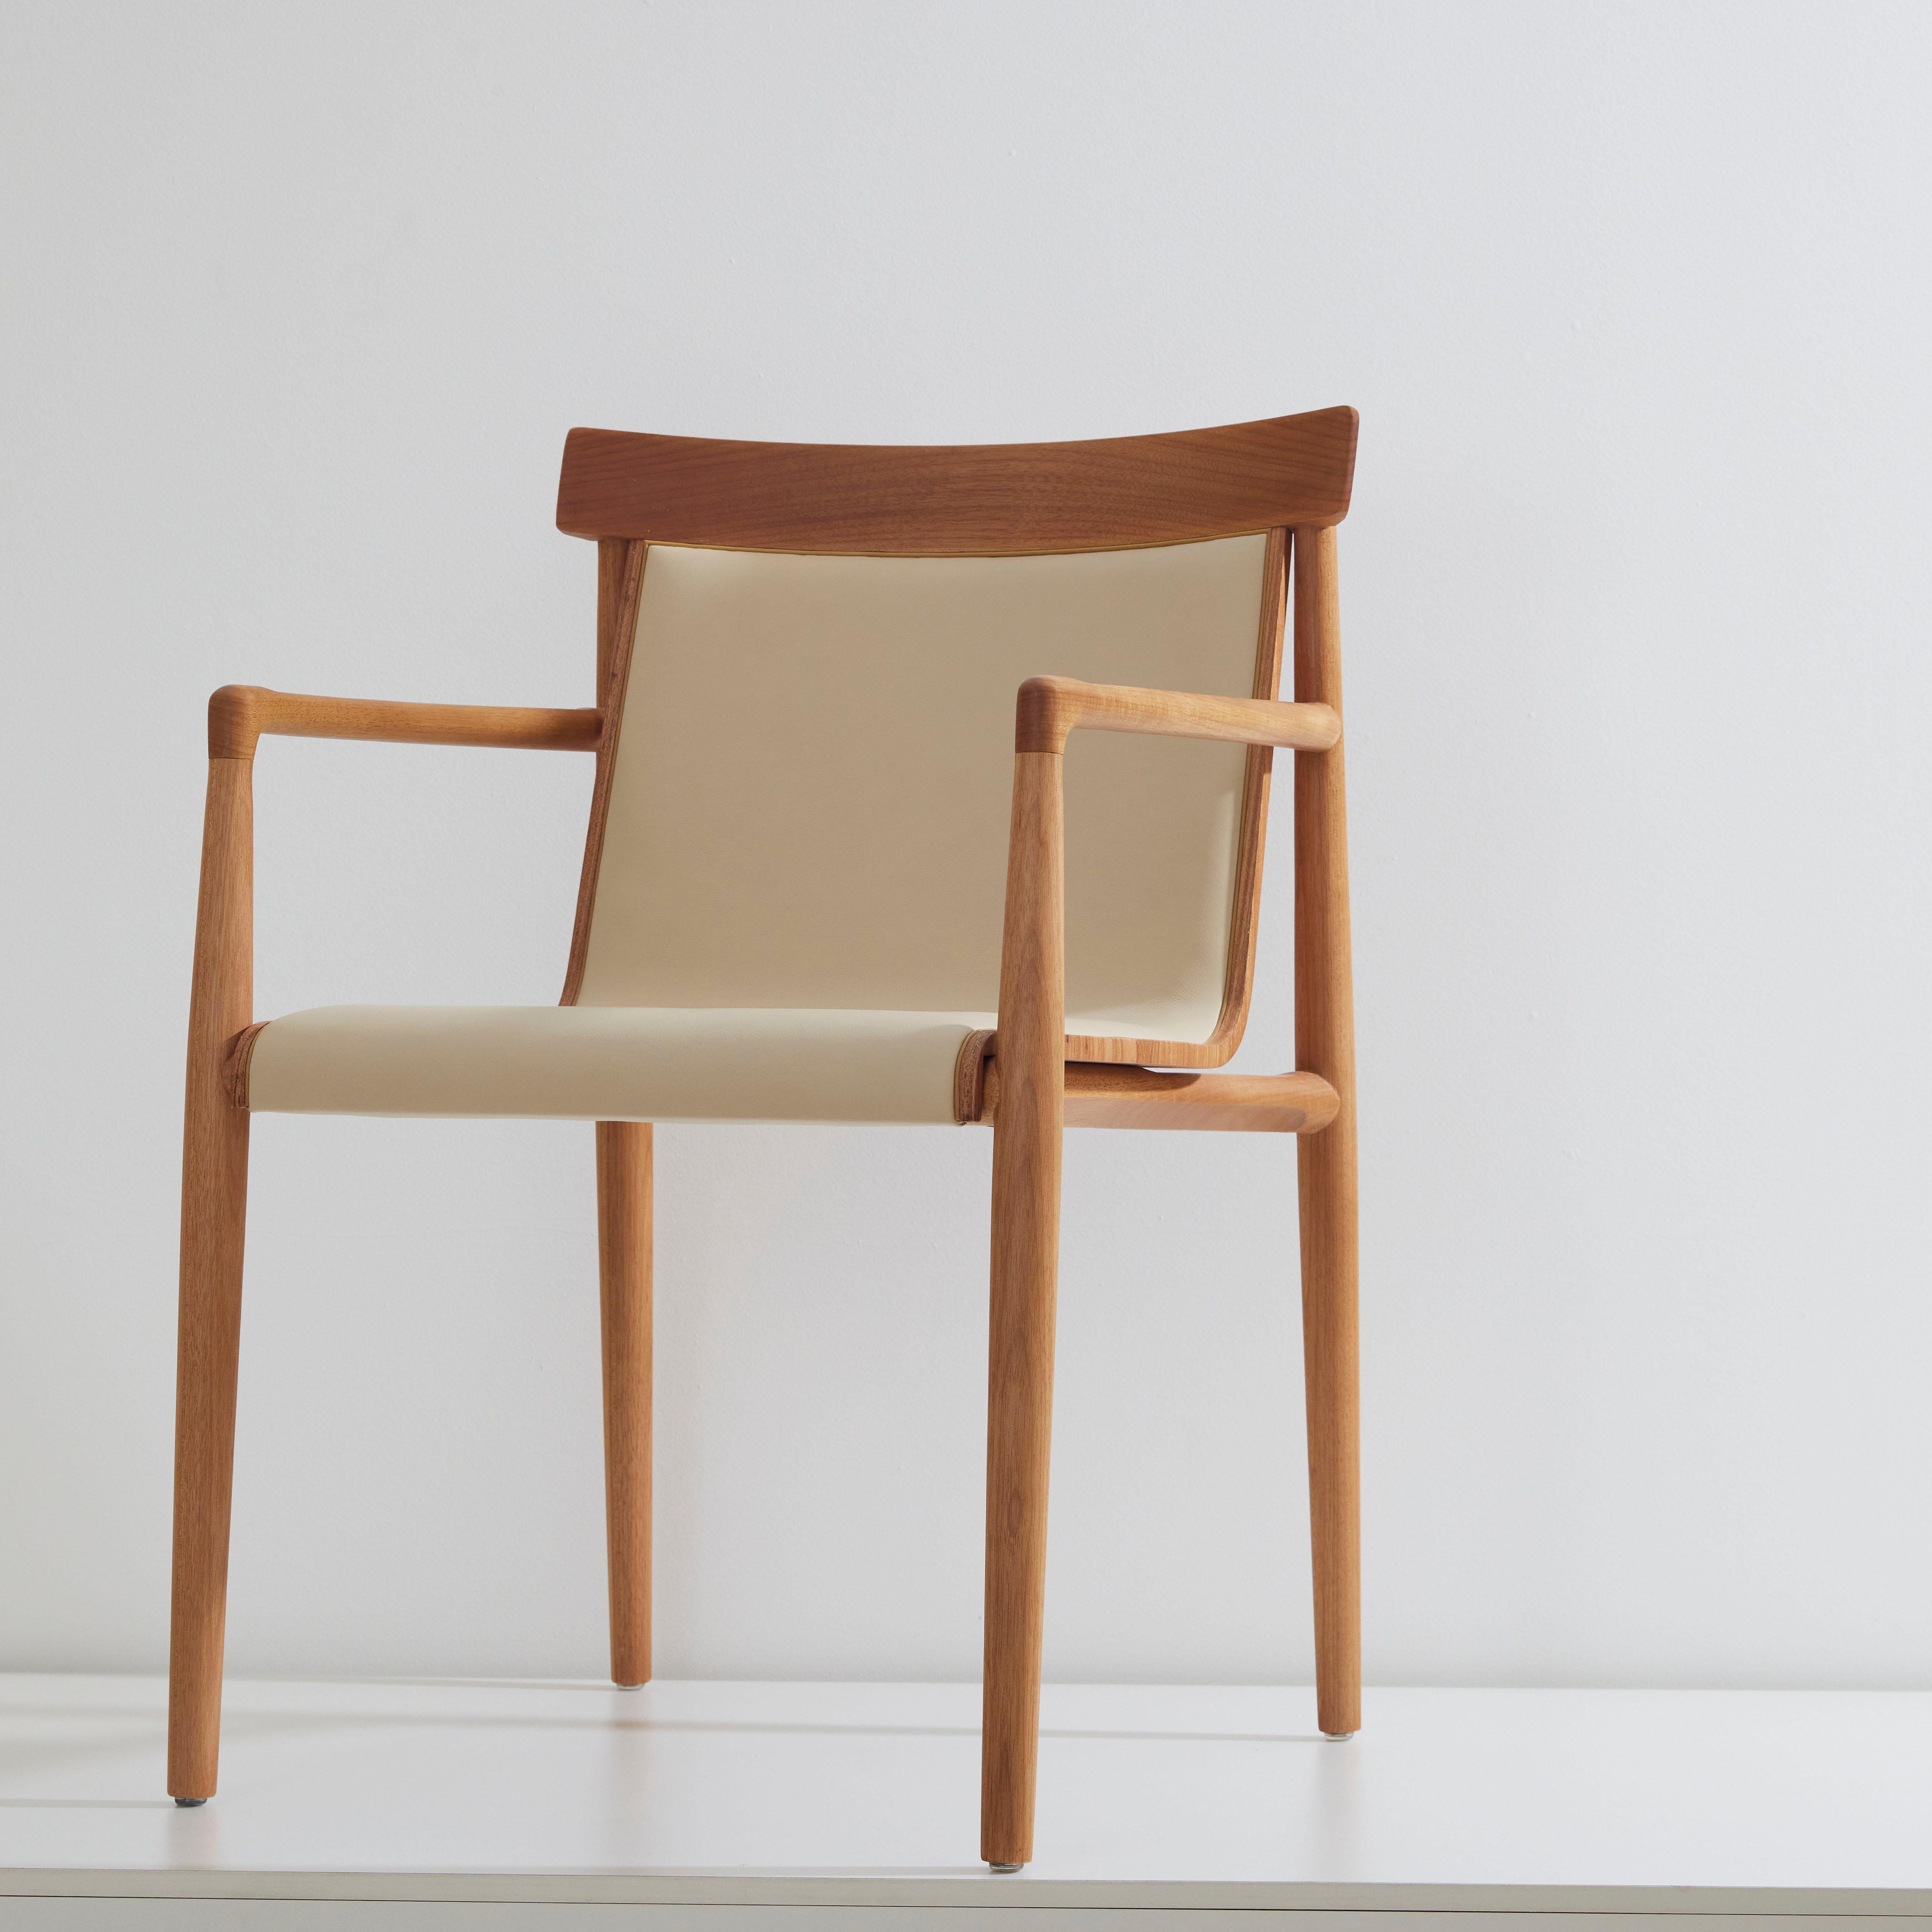 Collection de chaises sèches.

Le concept de la chaise Dry consiste à travailler dans un mélange de références distinctes pour aboutir à un classique moderne dans une danse entre le rétro et le moderne. Un travail du bois lourd et profond est